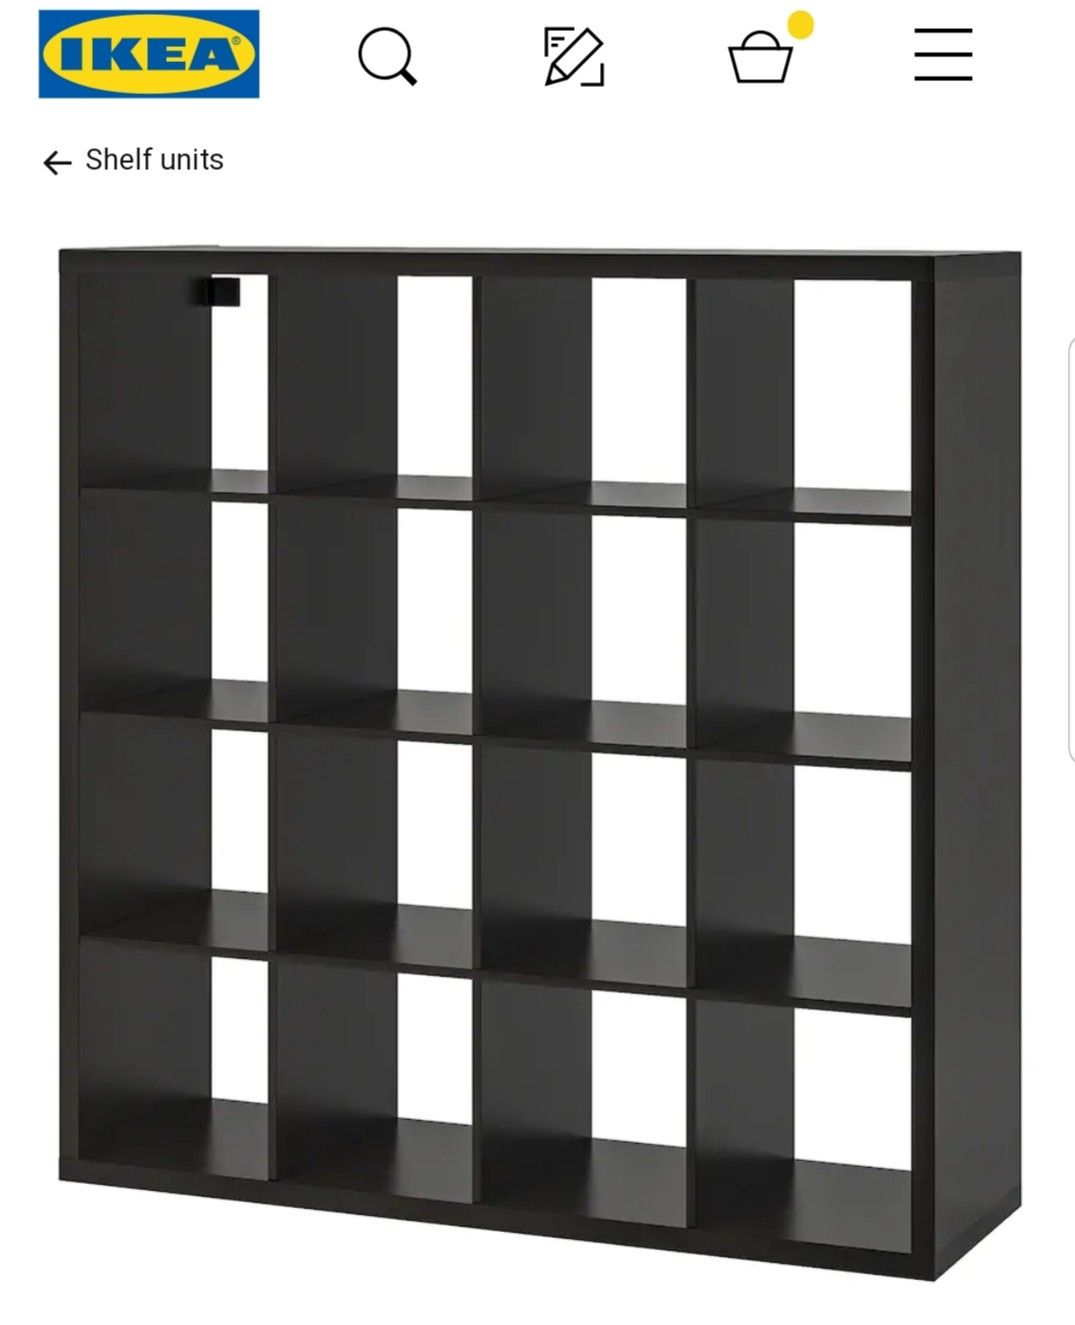 IKEA bookshelves